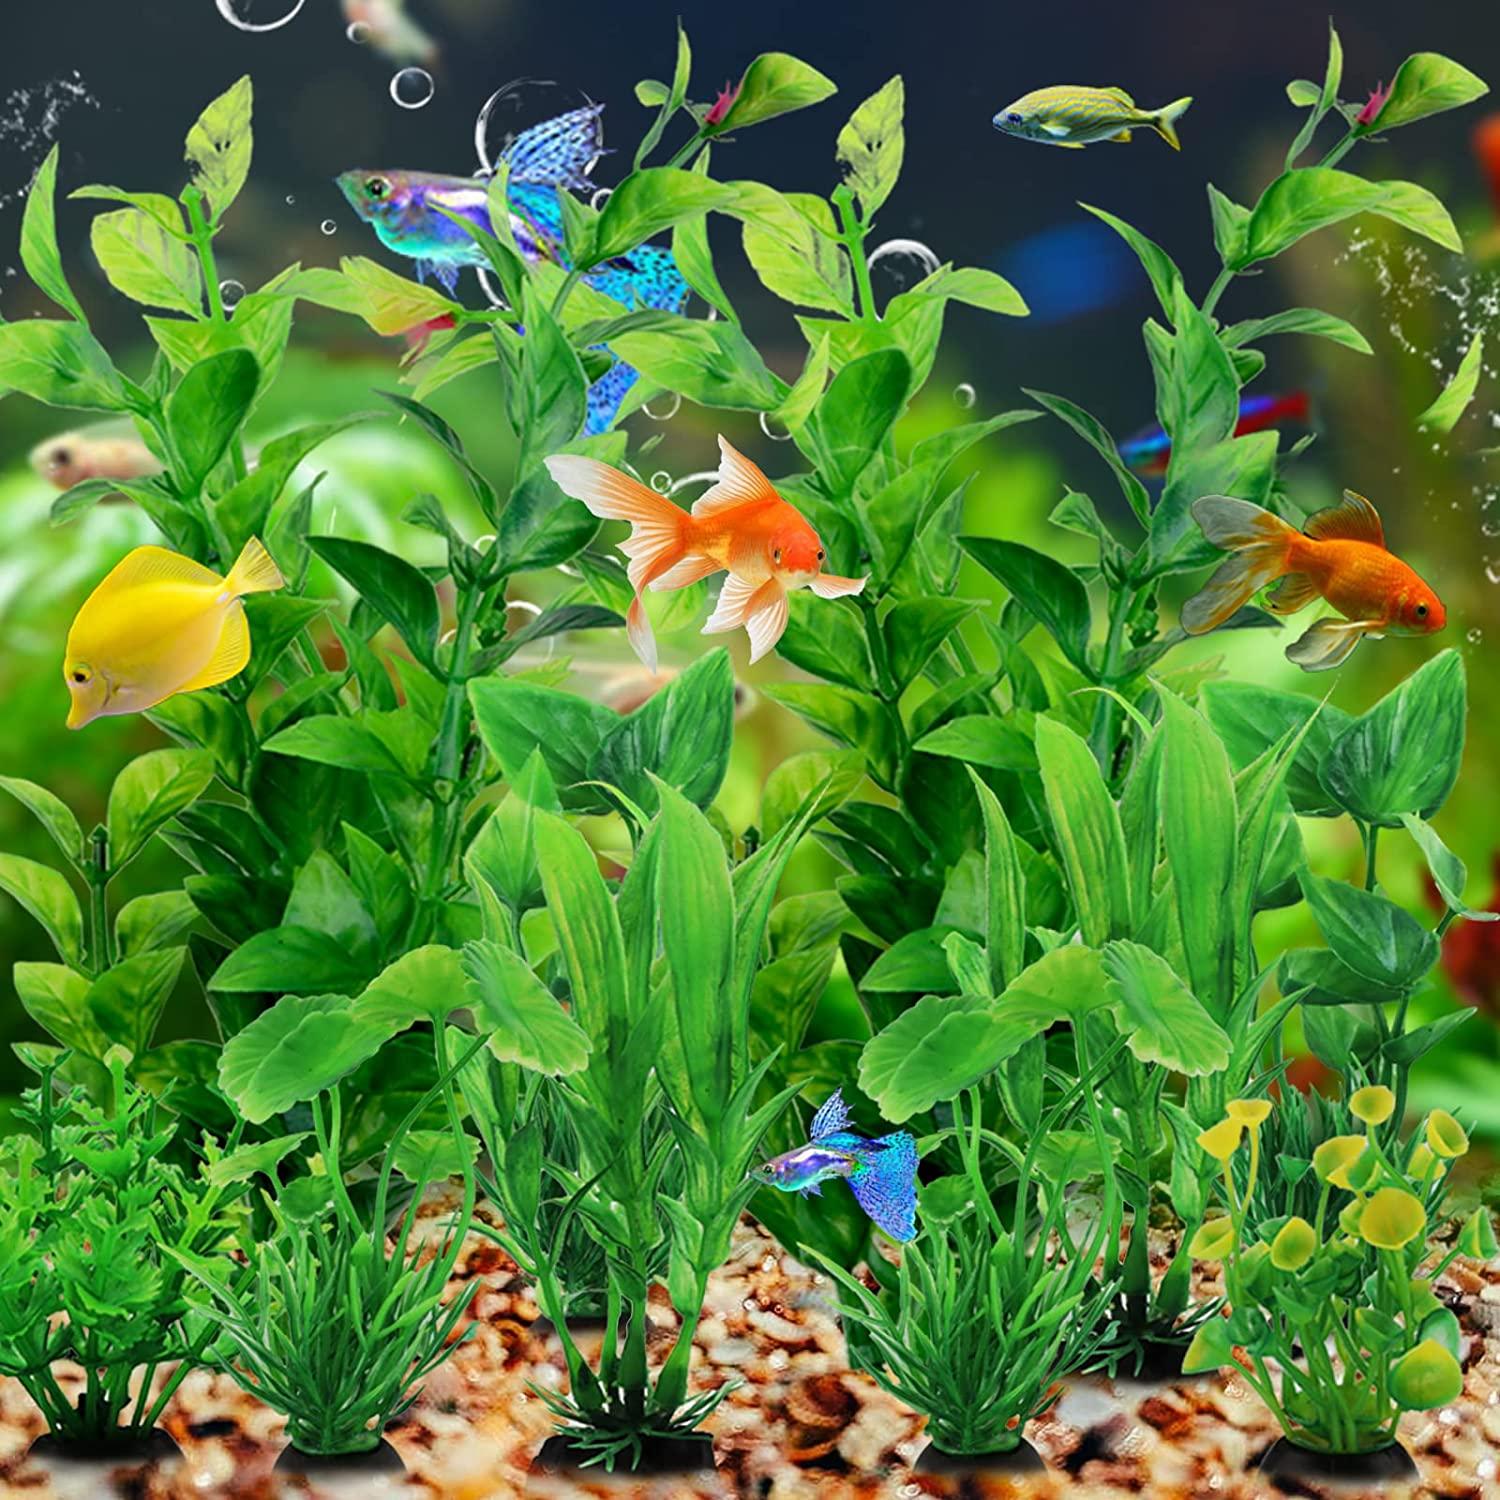 Llglmypet Artificial Aquarium Decorations Plants for Fish Tank India